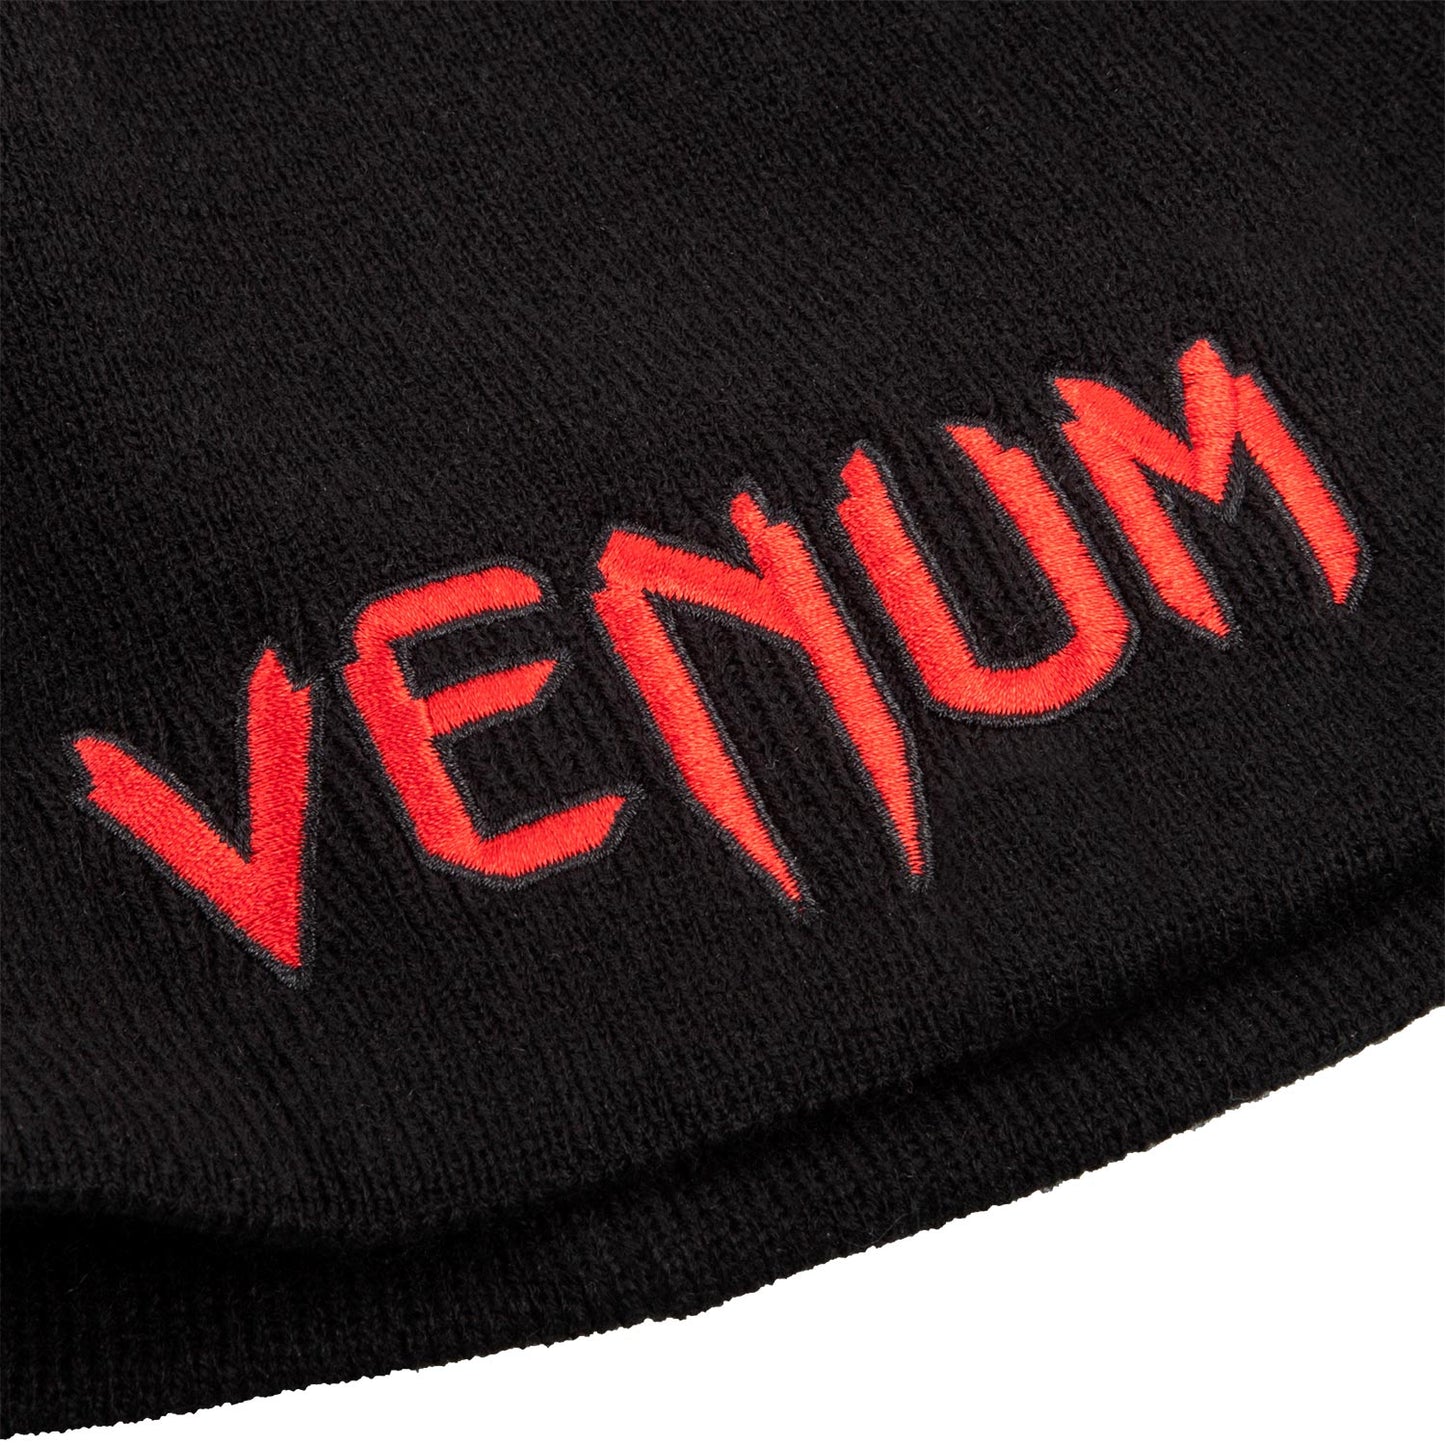 Venum Classic Beanie - Black/Red